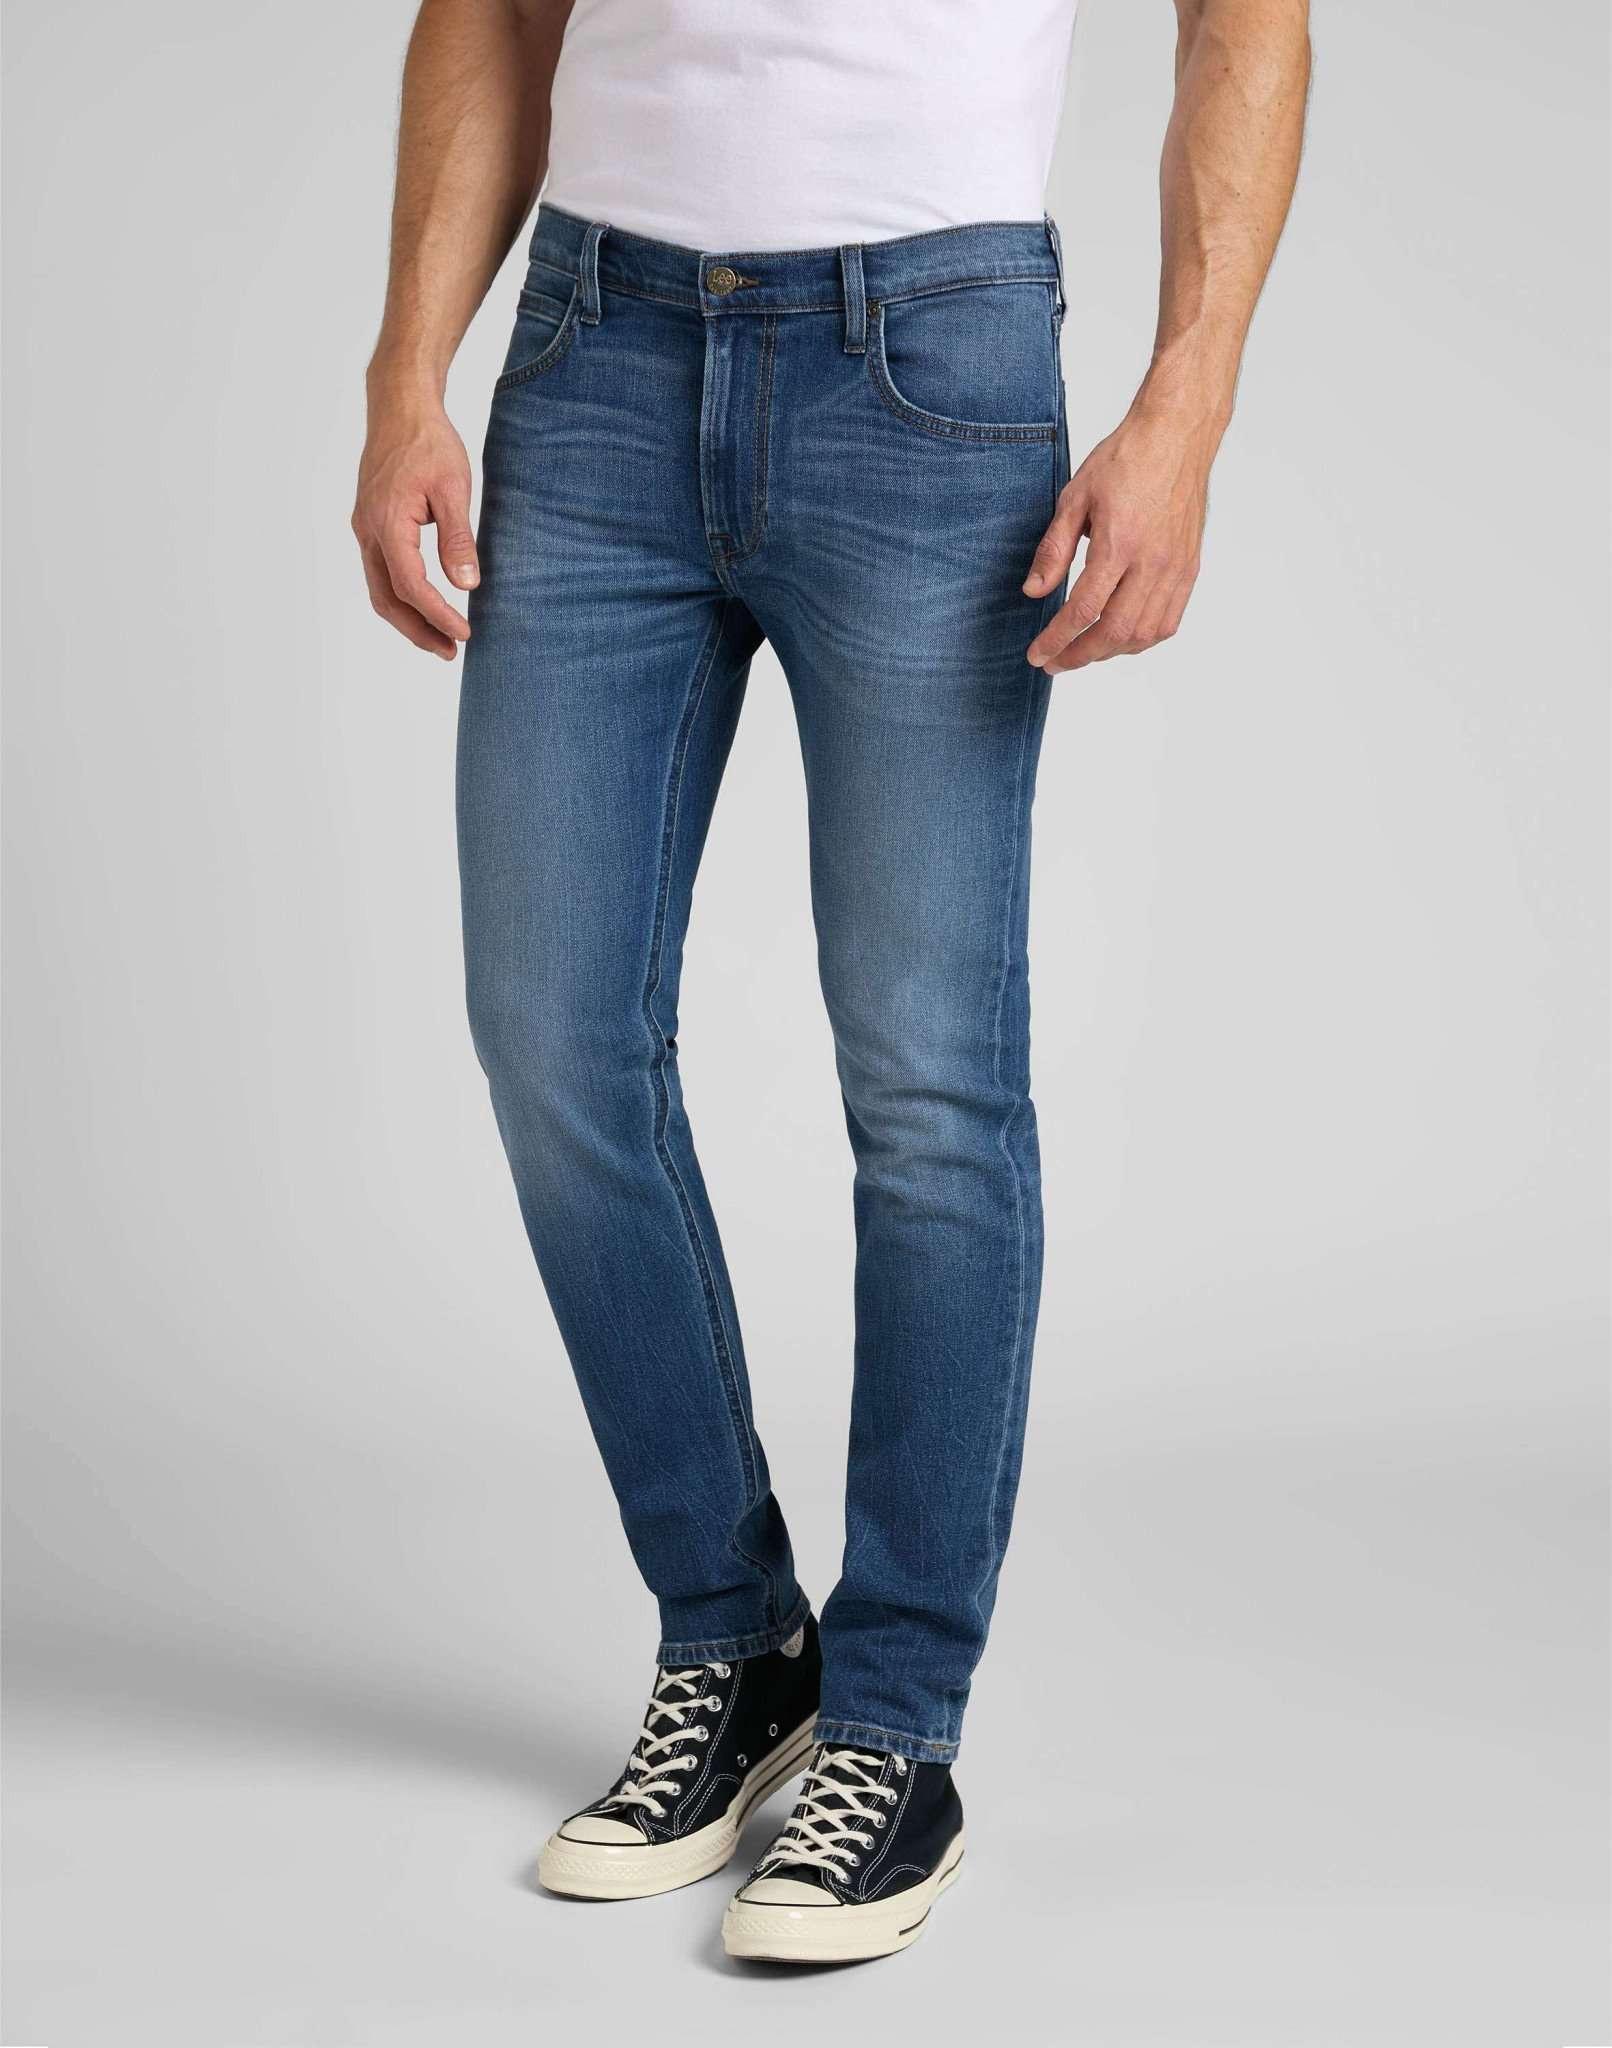 Jeans Slim Fit Luke Herren Blau Denim L34/W31 von Lee